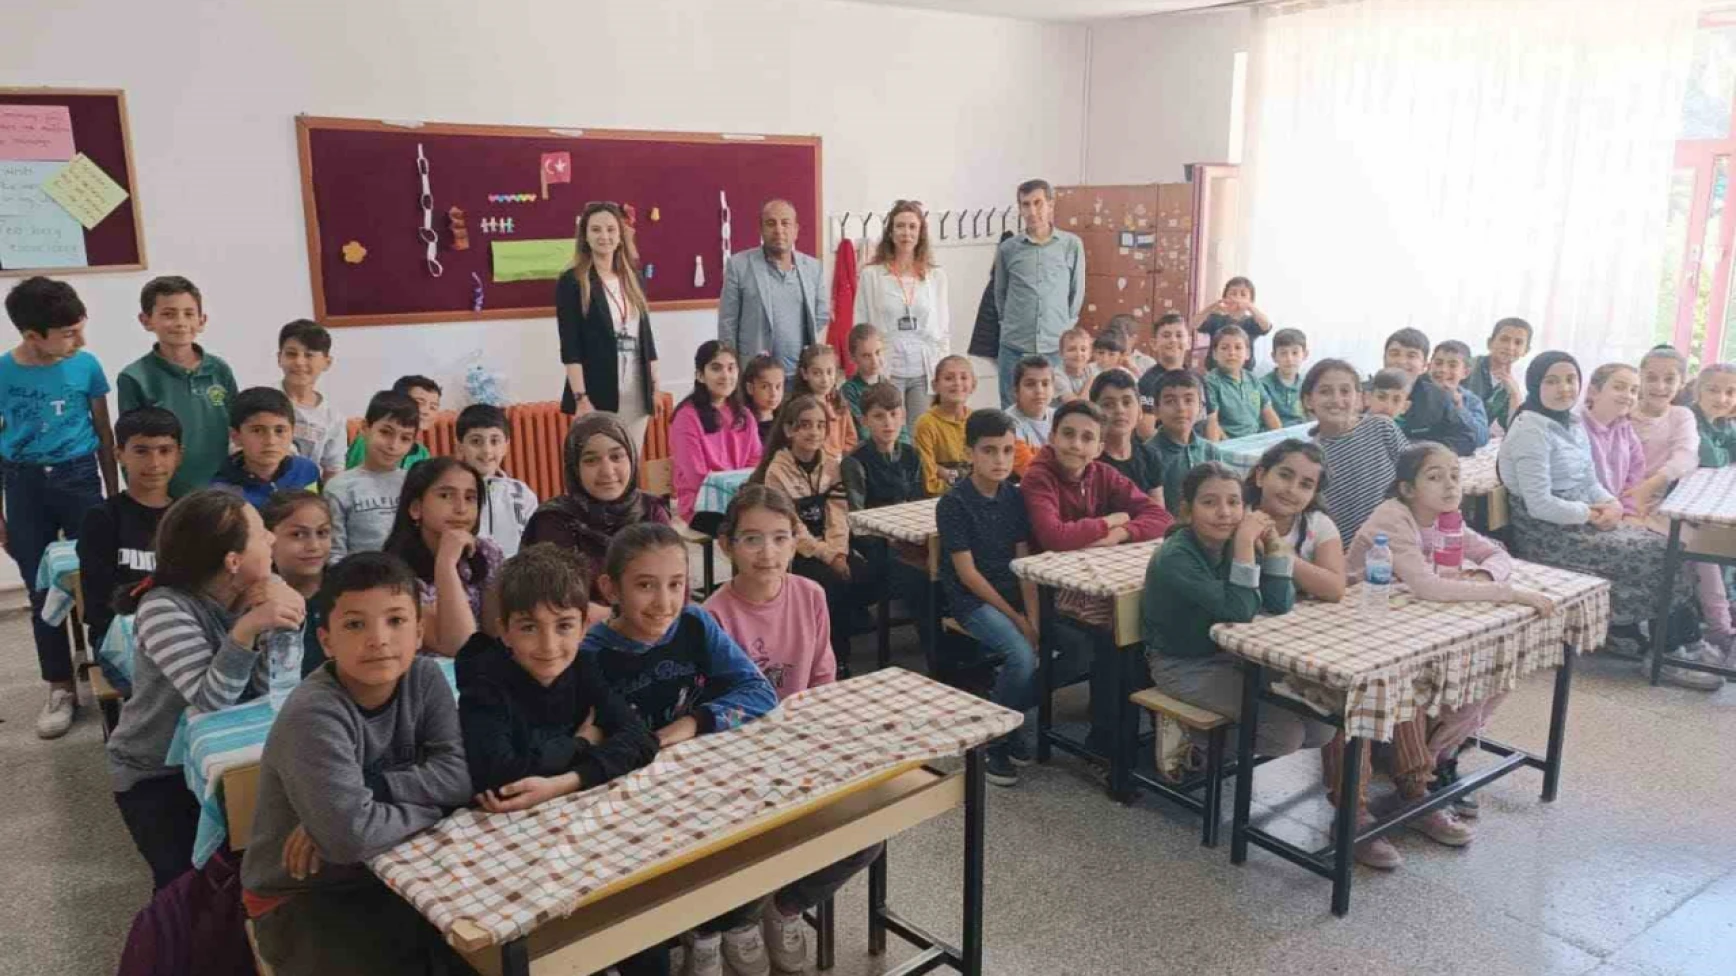 Elazığ'da 135 öğrenciye gıda güvenirliği eğitimi verildi